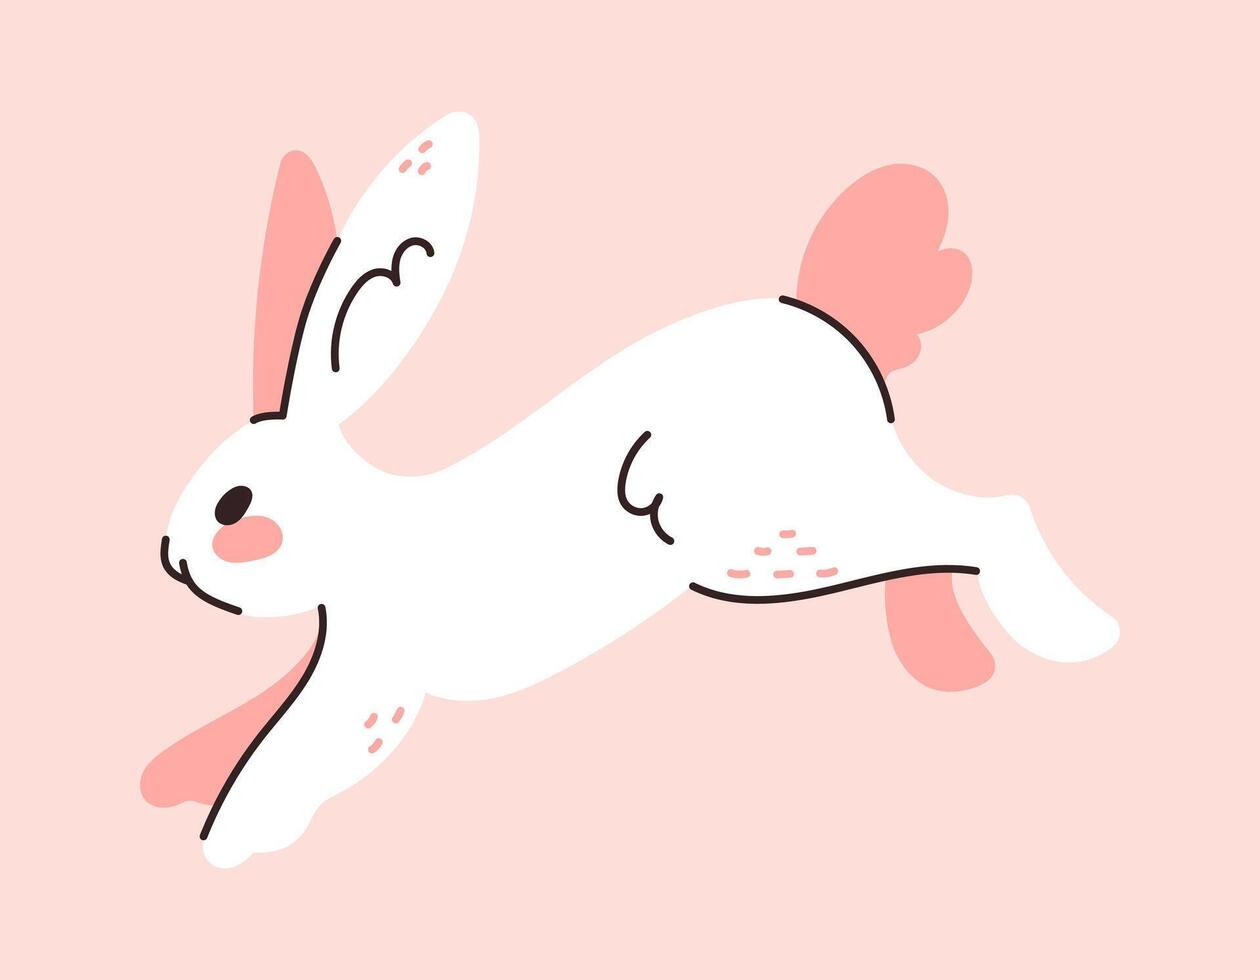 reeks Pasen konijntjes verzameling konijn haas tekenfilm schattig karakter pastel kleuren vector